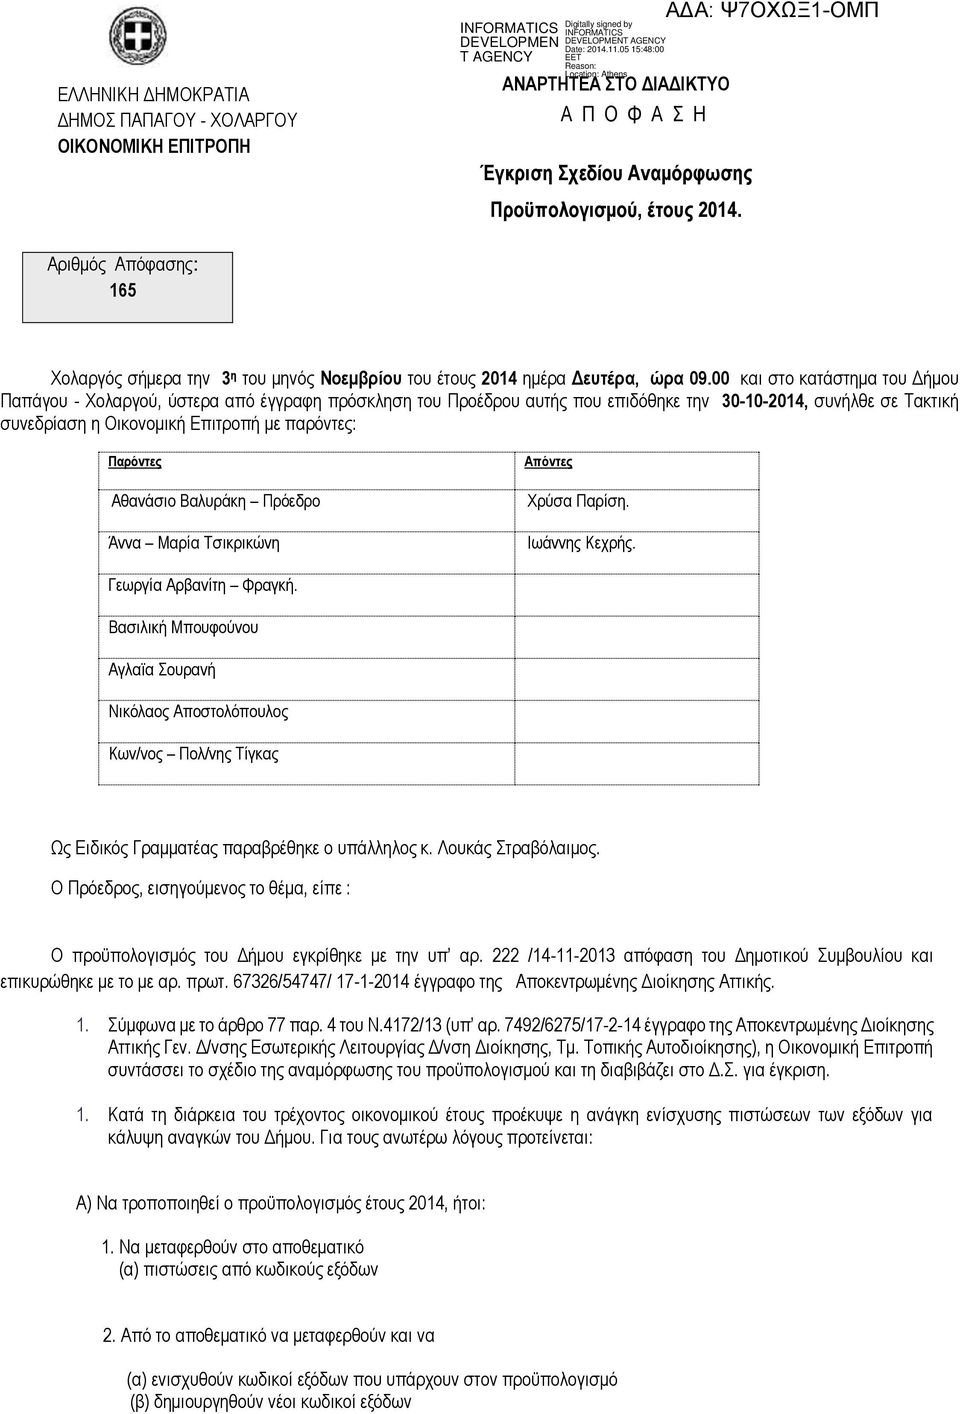 00 και στο κατάστημα του Δήμου Παπάγου - Χολαργού, ύστερα από έγγραφη πρόσκληση του Προέδρου αυτής που επιδόθηκε την 30-10-2014, συνήλθε σε Τακτική συνεδρίαση η Οικονομική Επιτροπή με παρόντες: